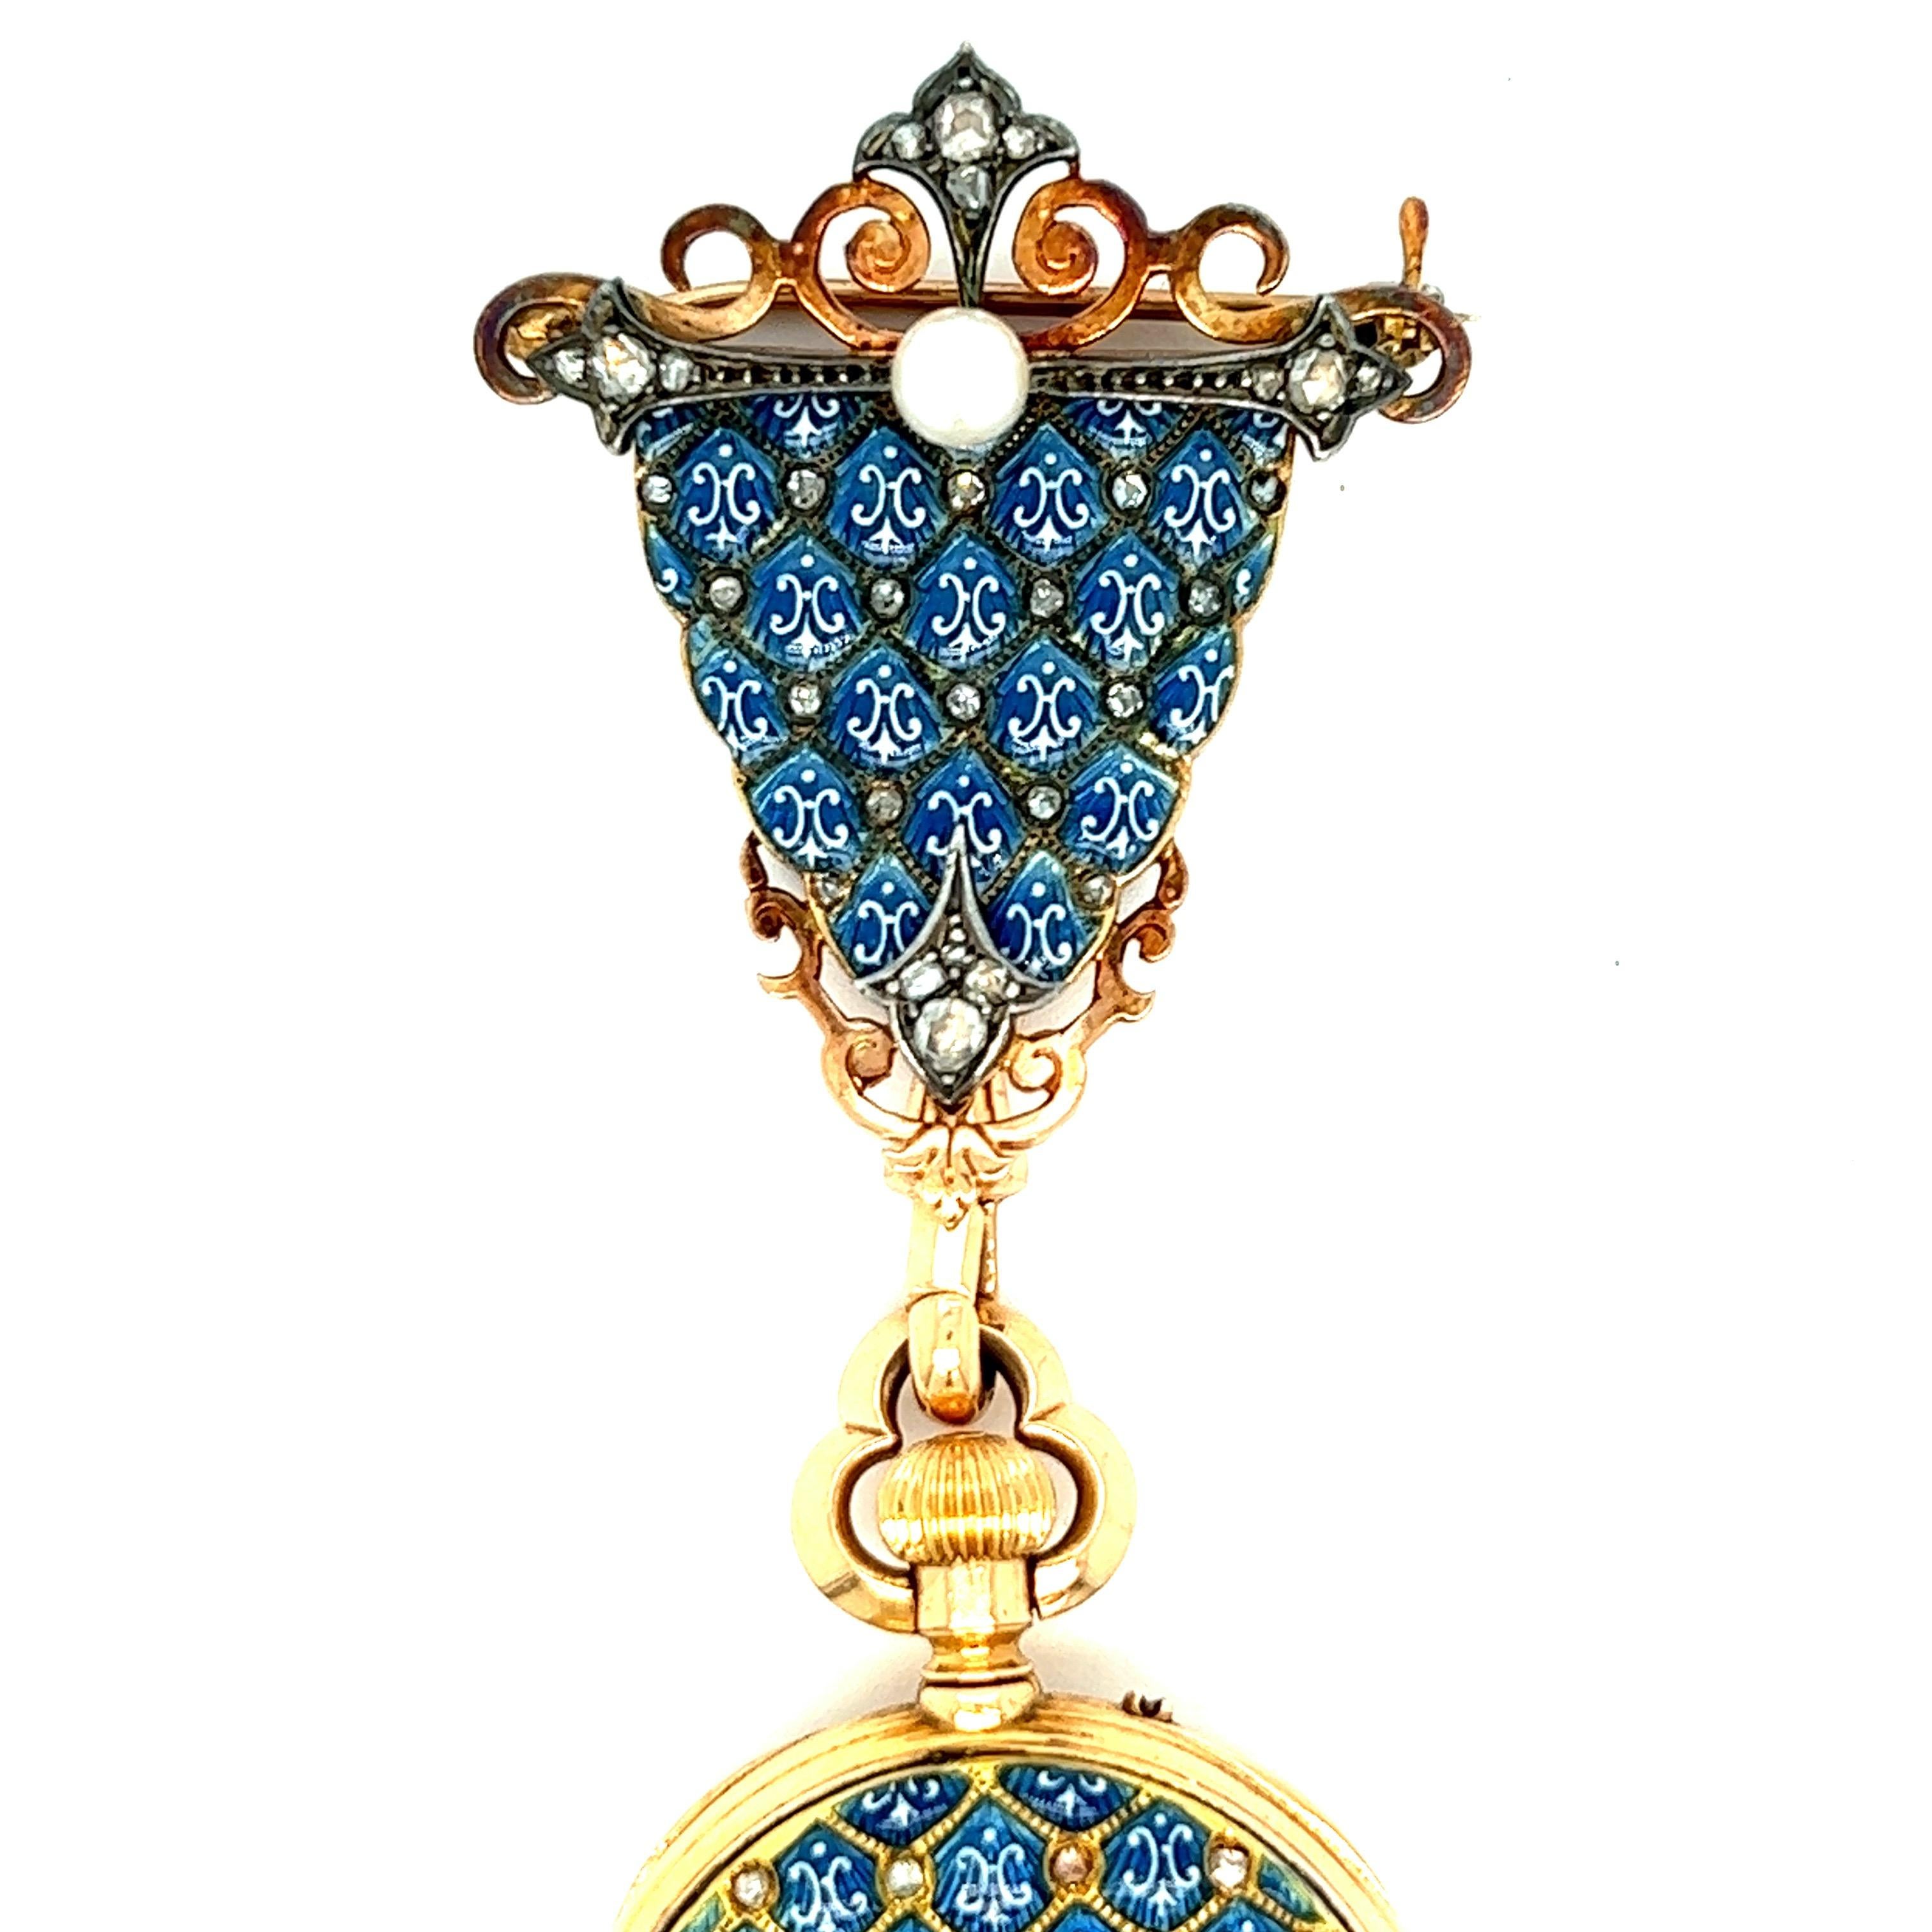 Französische Uhr mit blauem Email und Diamanten als Anhänger, um 1880

Offene Uhr mit einer Perle und alten Rohdiamanten im Minenschliff, Emailzifferblatt mit römischen Ziffern; gemarkt 24388; bezeichnet 